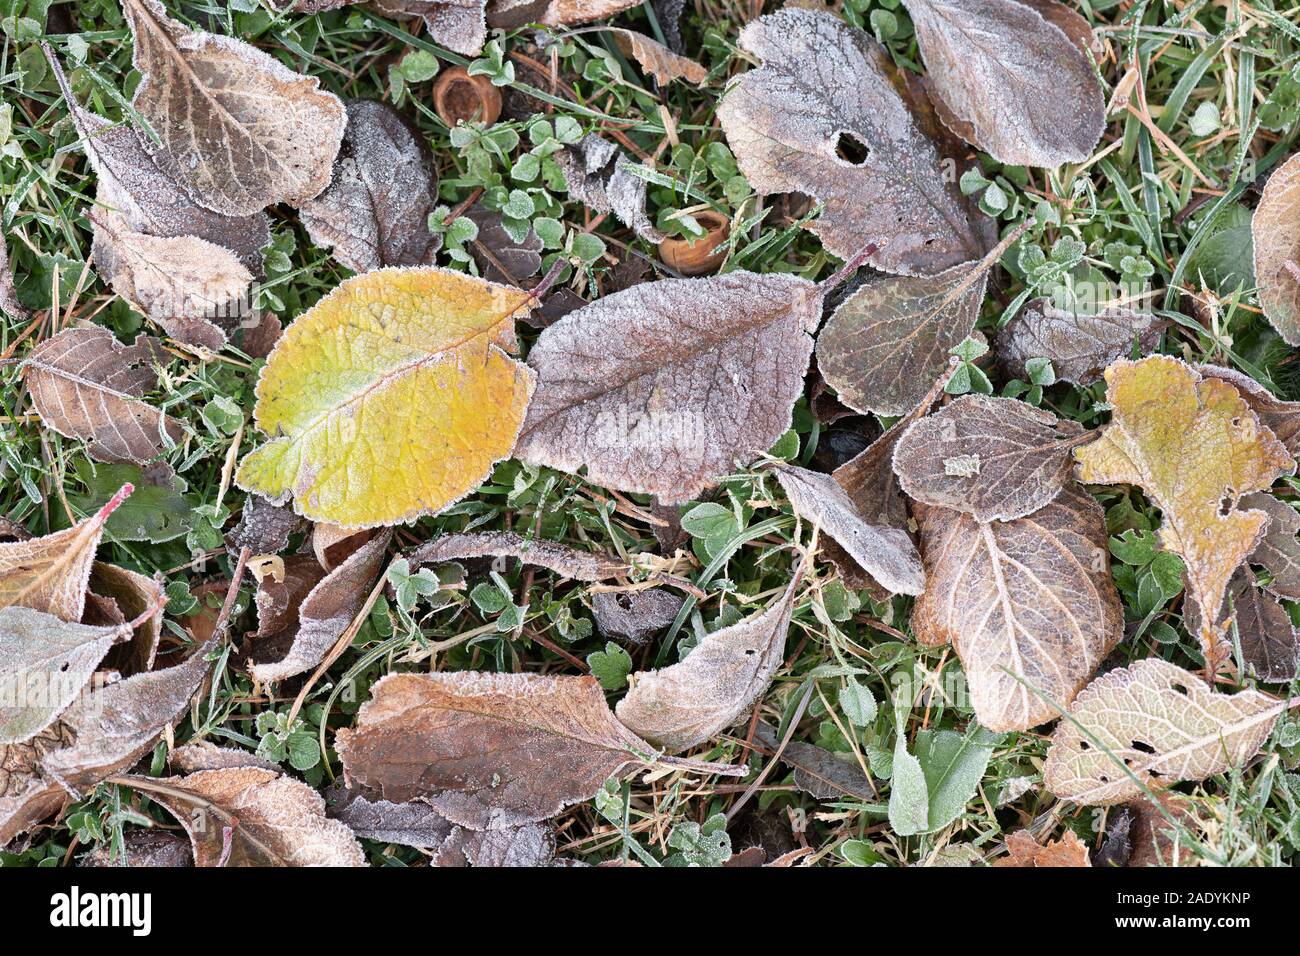 Hojarasca en una helada mañana mostrando una variedad de hojas, incluyendo, pero no exclusivamente, las hojas de un árbol de ciruela (Prunus domestica) Foto de stock